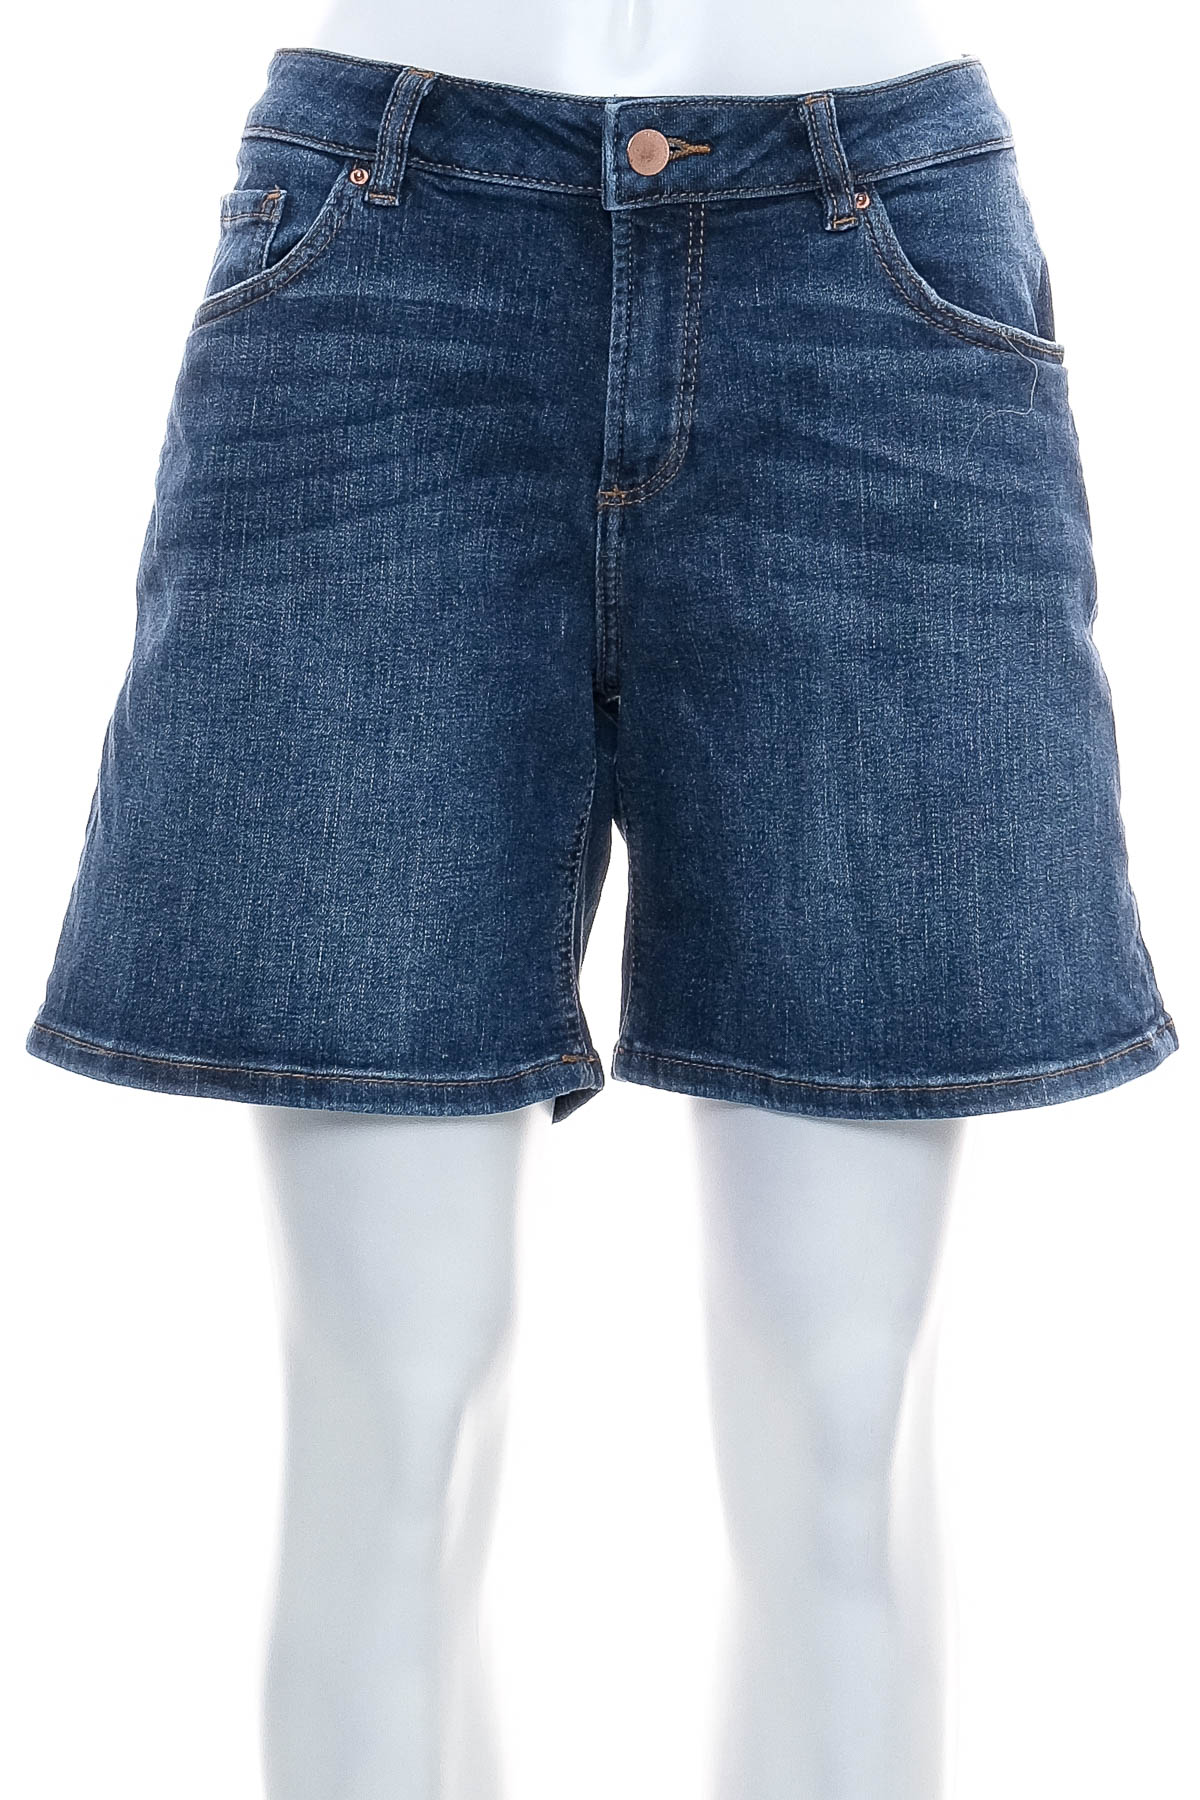 Female shorts - Q/S - 0